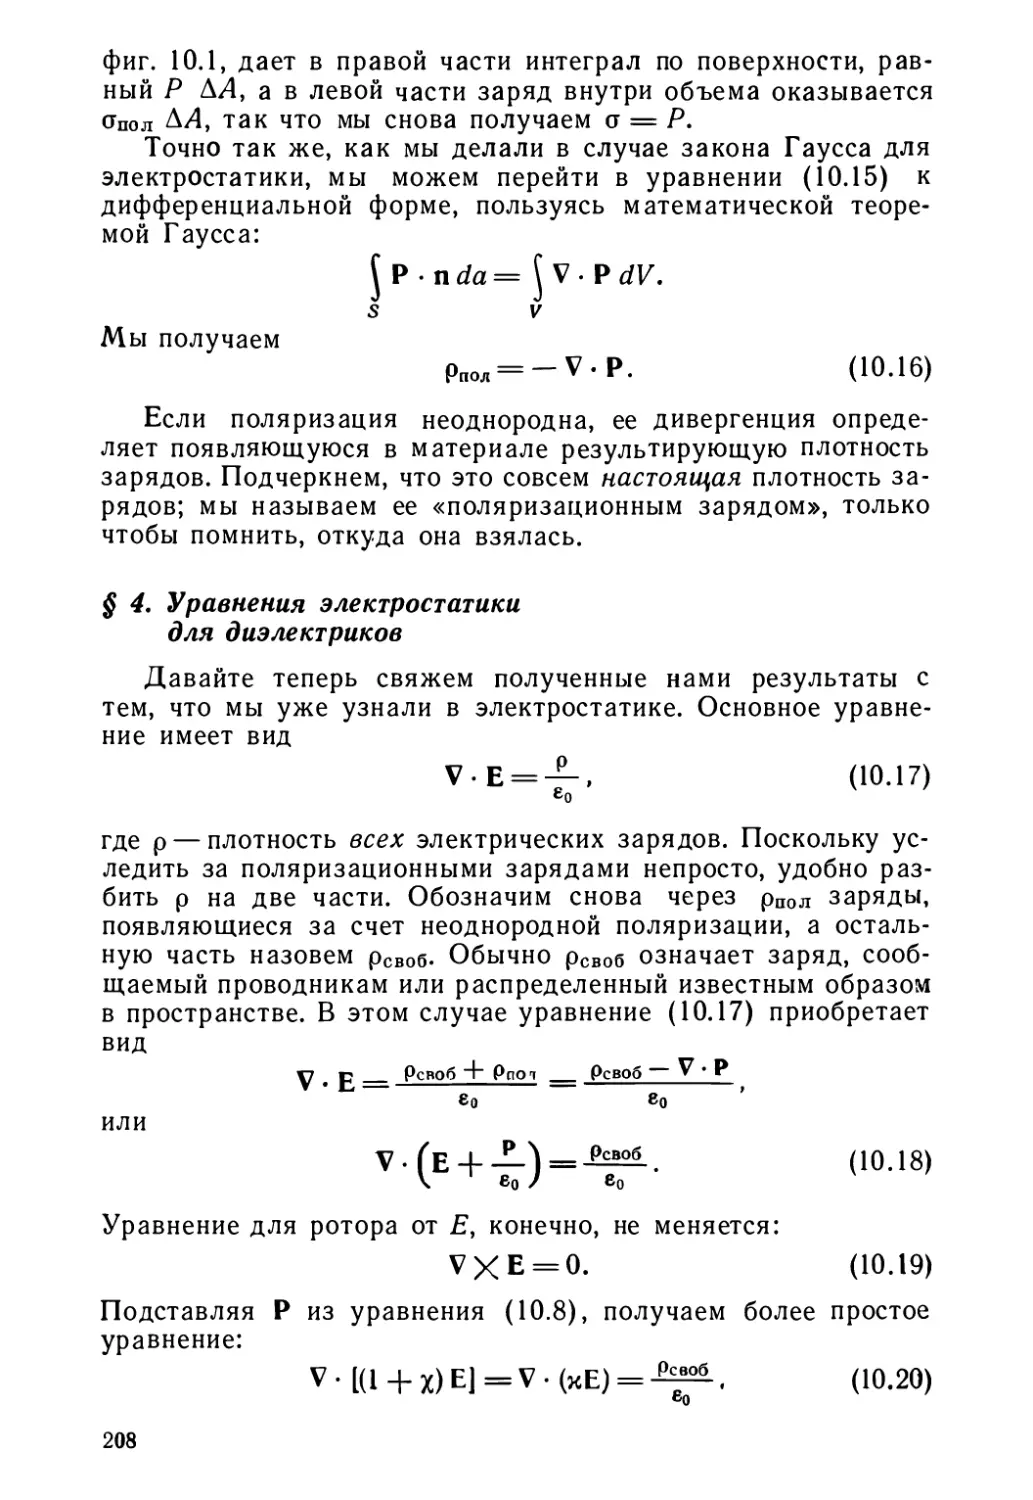 § 4. Уравнения электростатики для диэлектриков